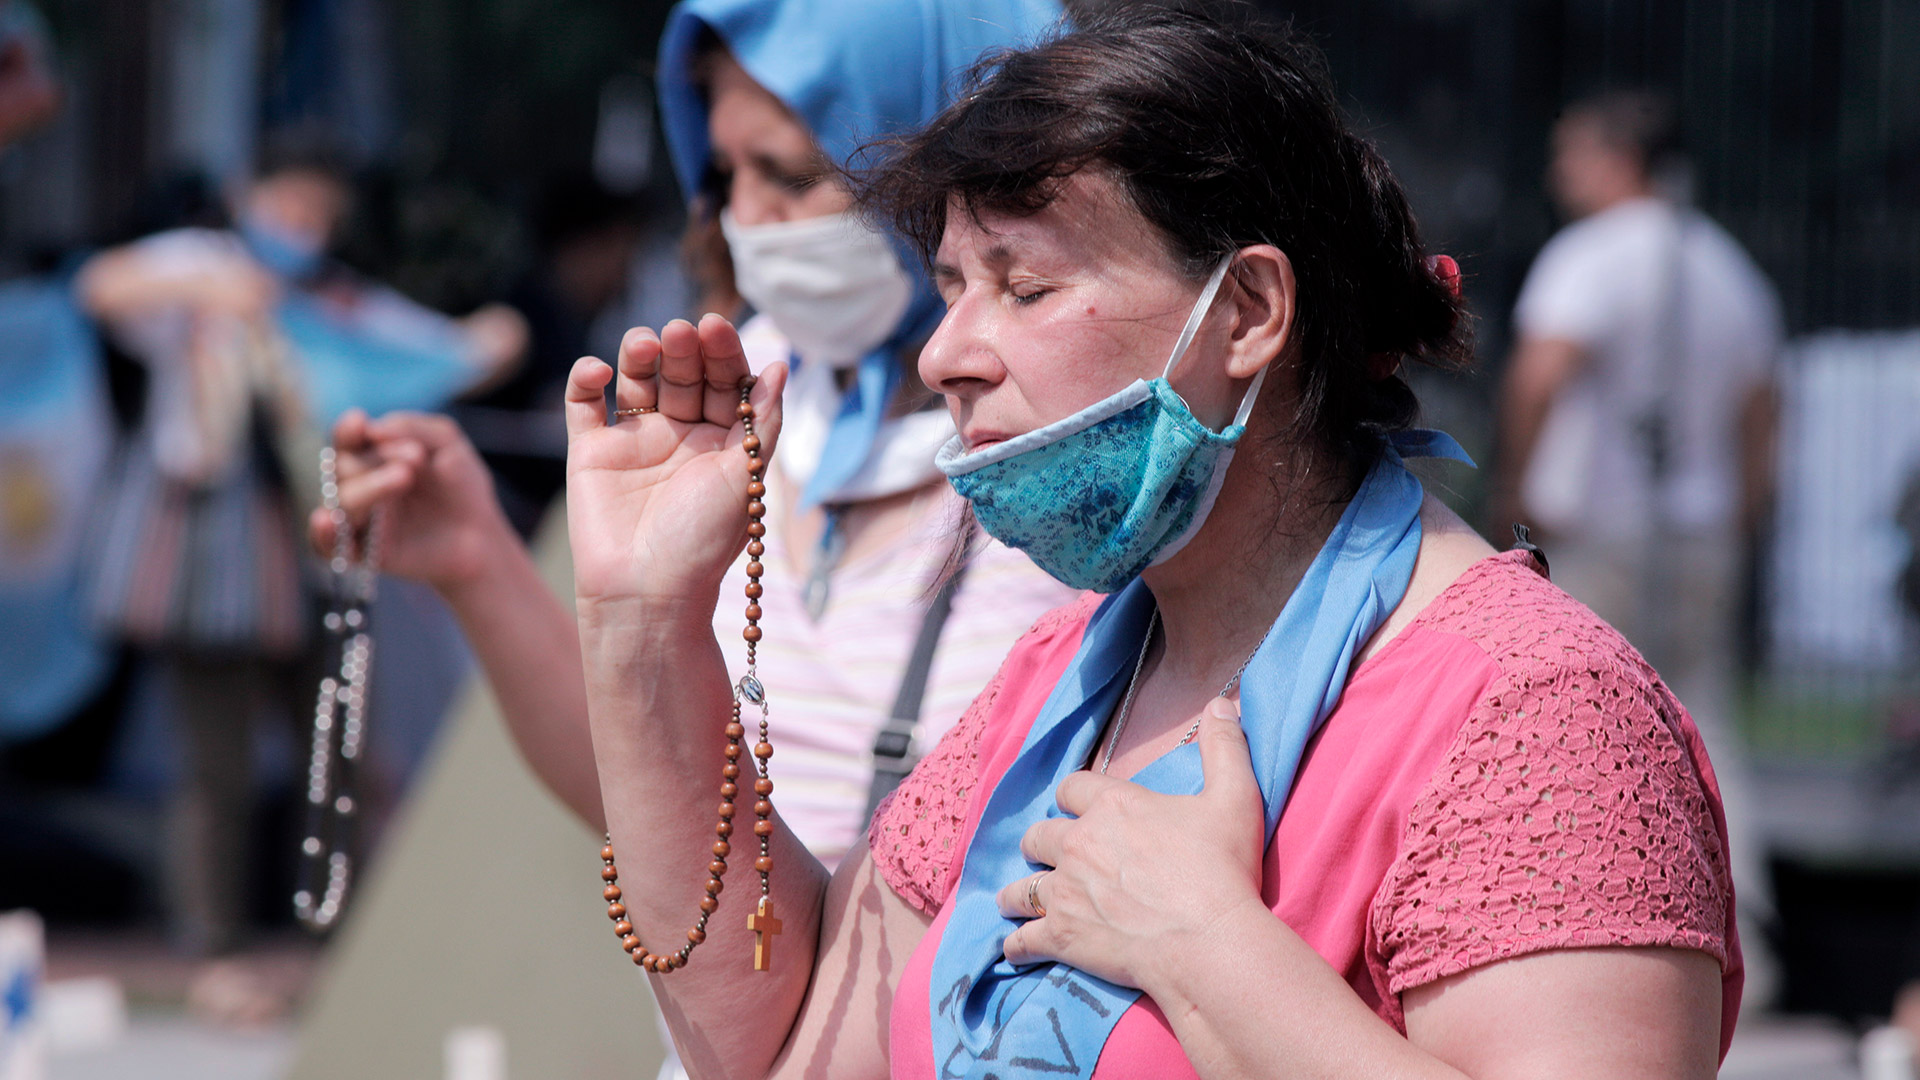 Los manifestantes "pro vida" se movilizaron con los clásicos pañuelos celestes, banderas argentinas y símbolos religiosos